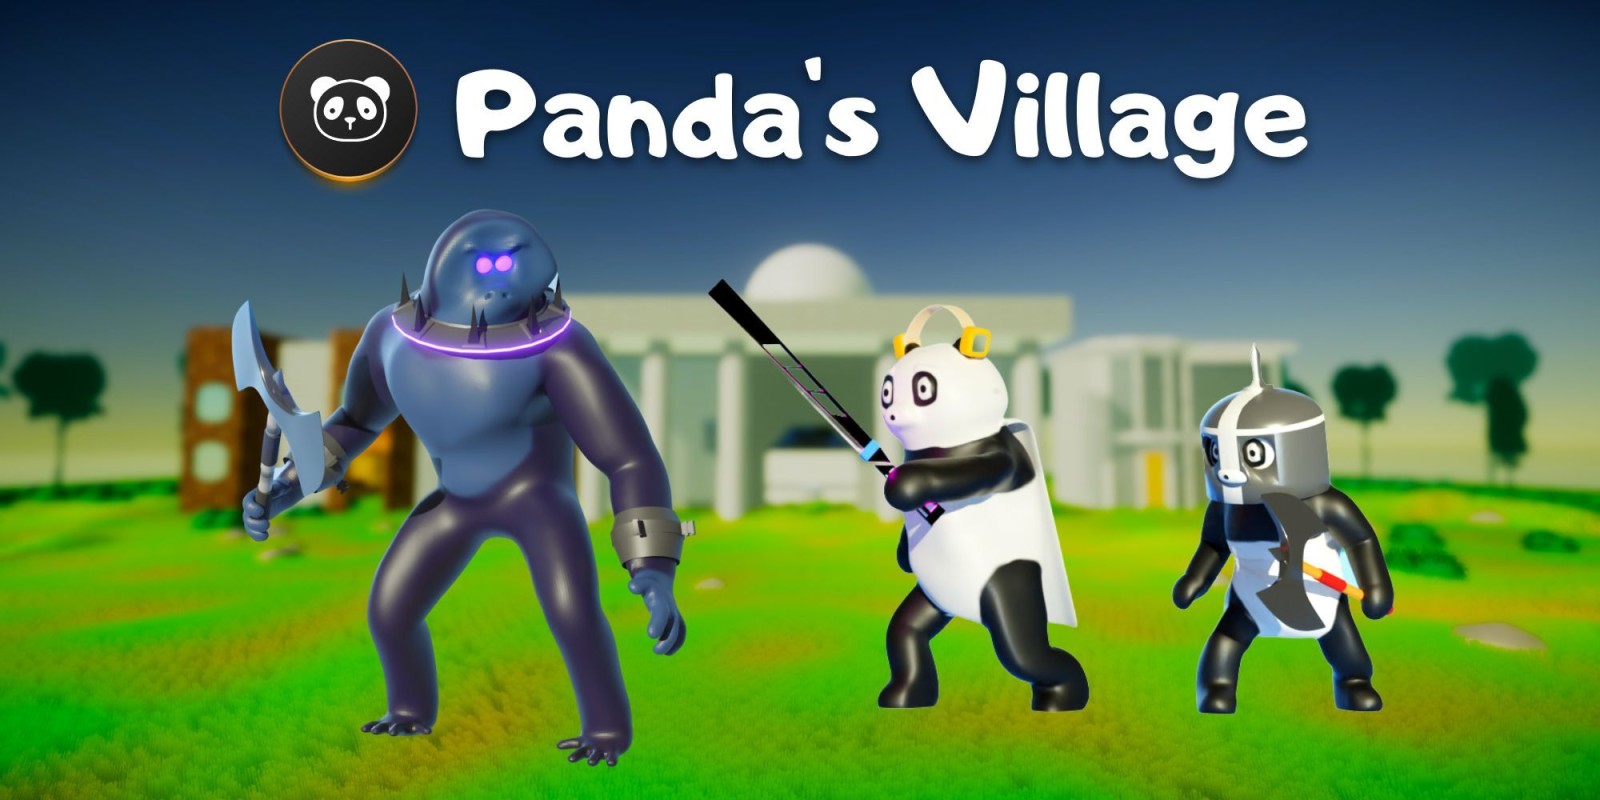 Le village des pandas